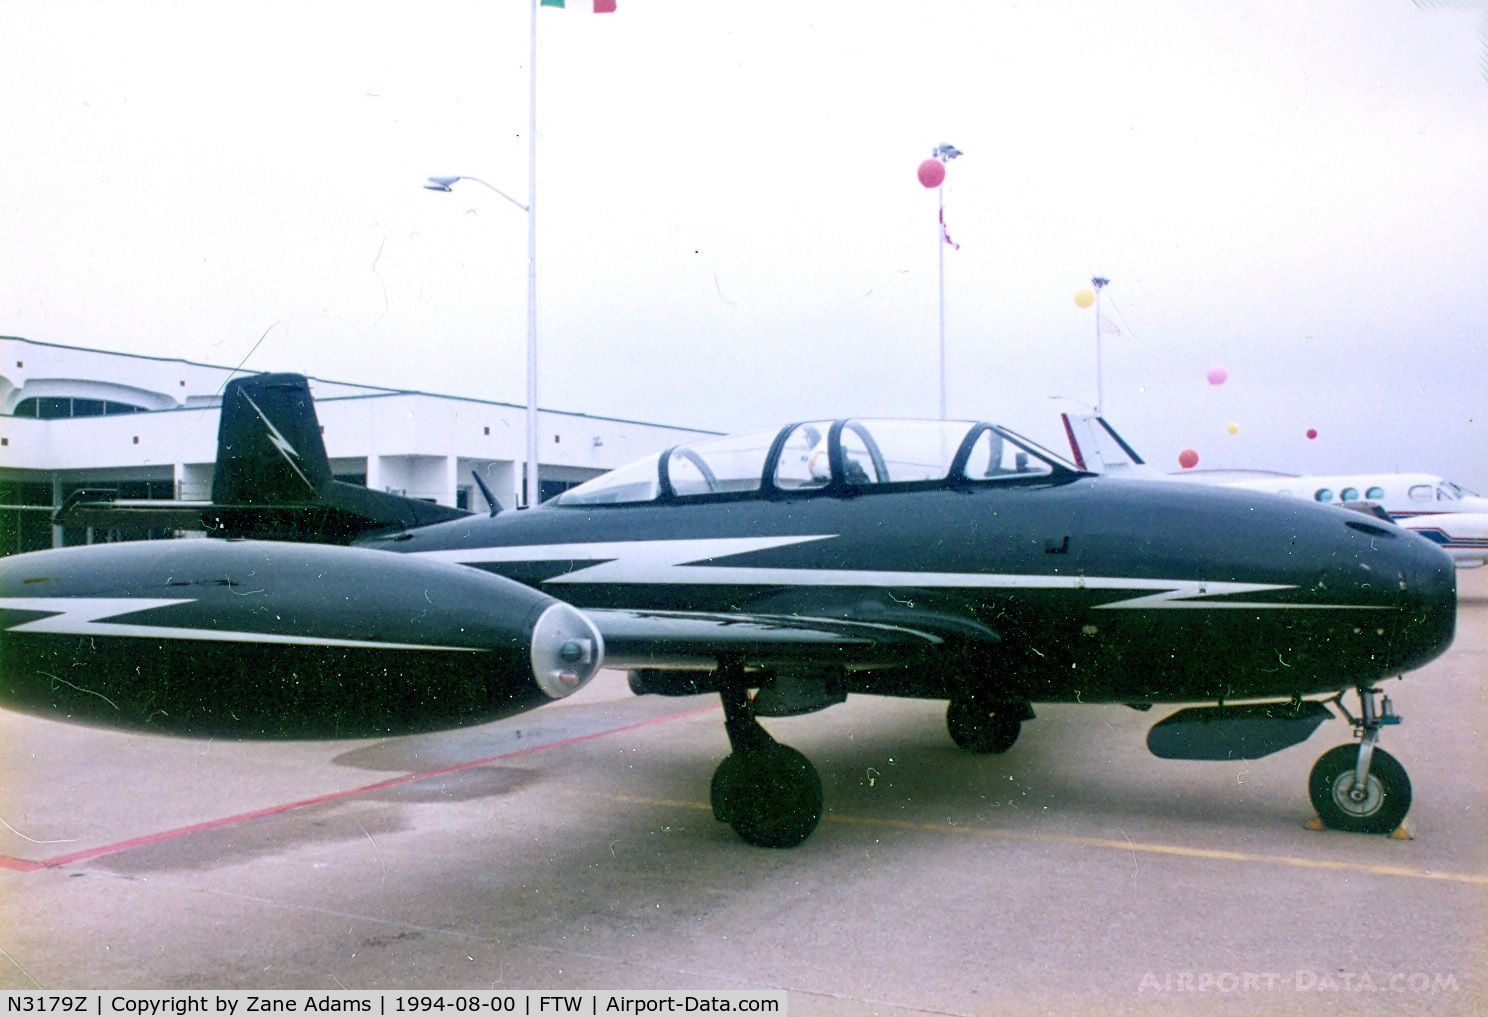 N3179Z, 1965 Hispano HA-220D Saeta C/N 20/61, HA-200 Saeta at Meacham Field